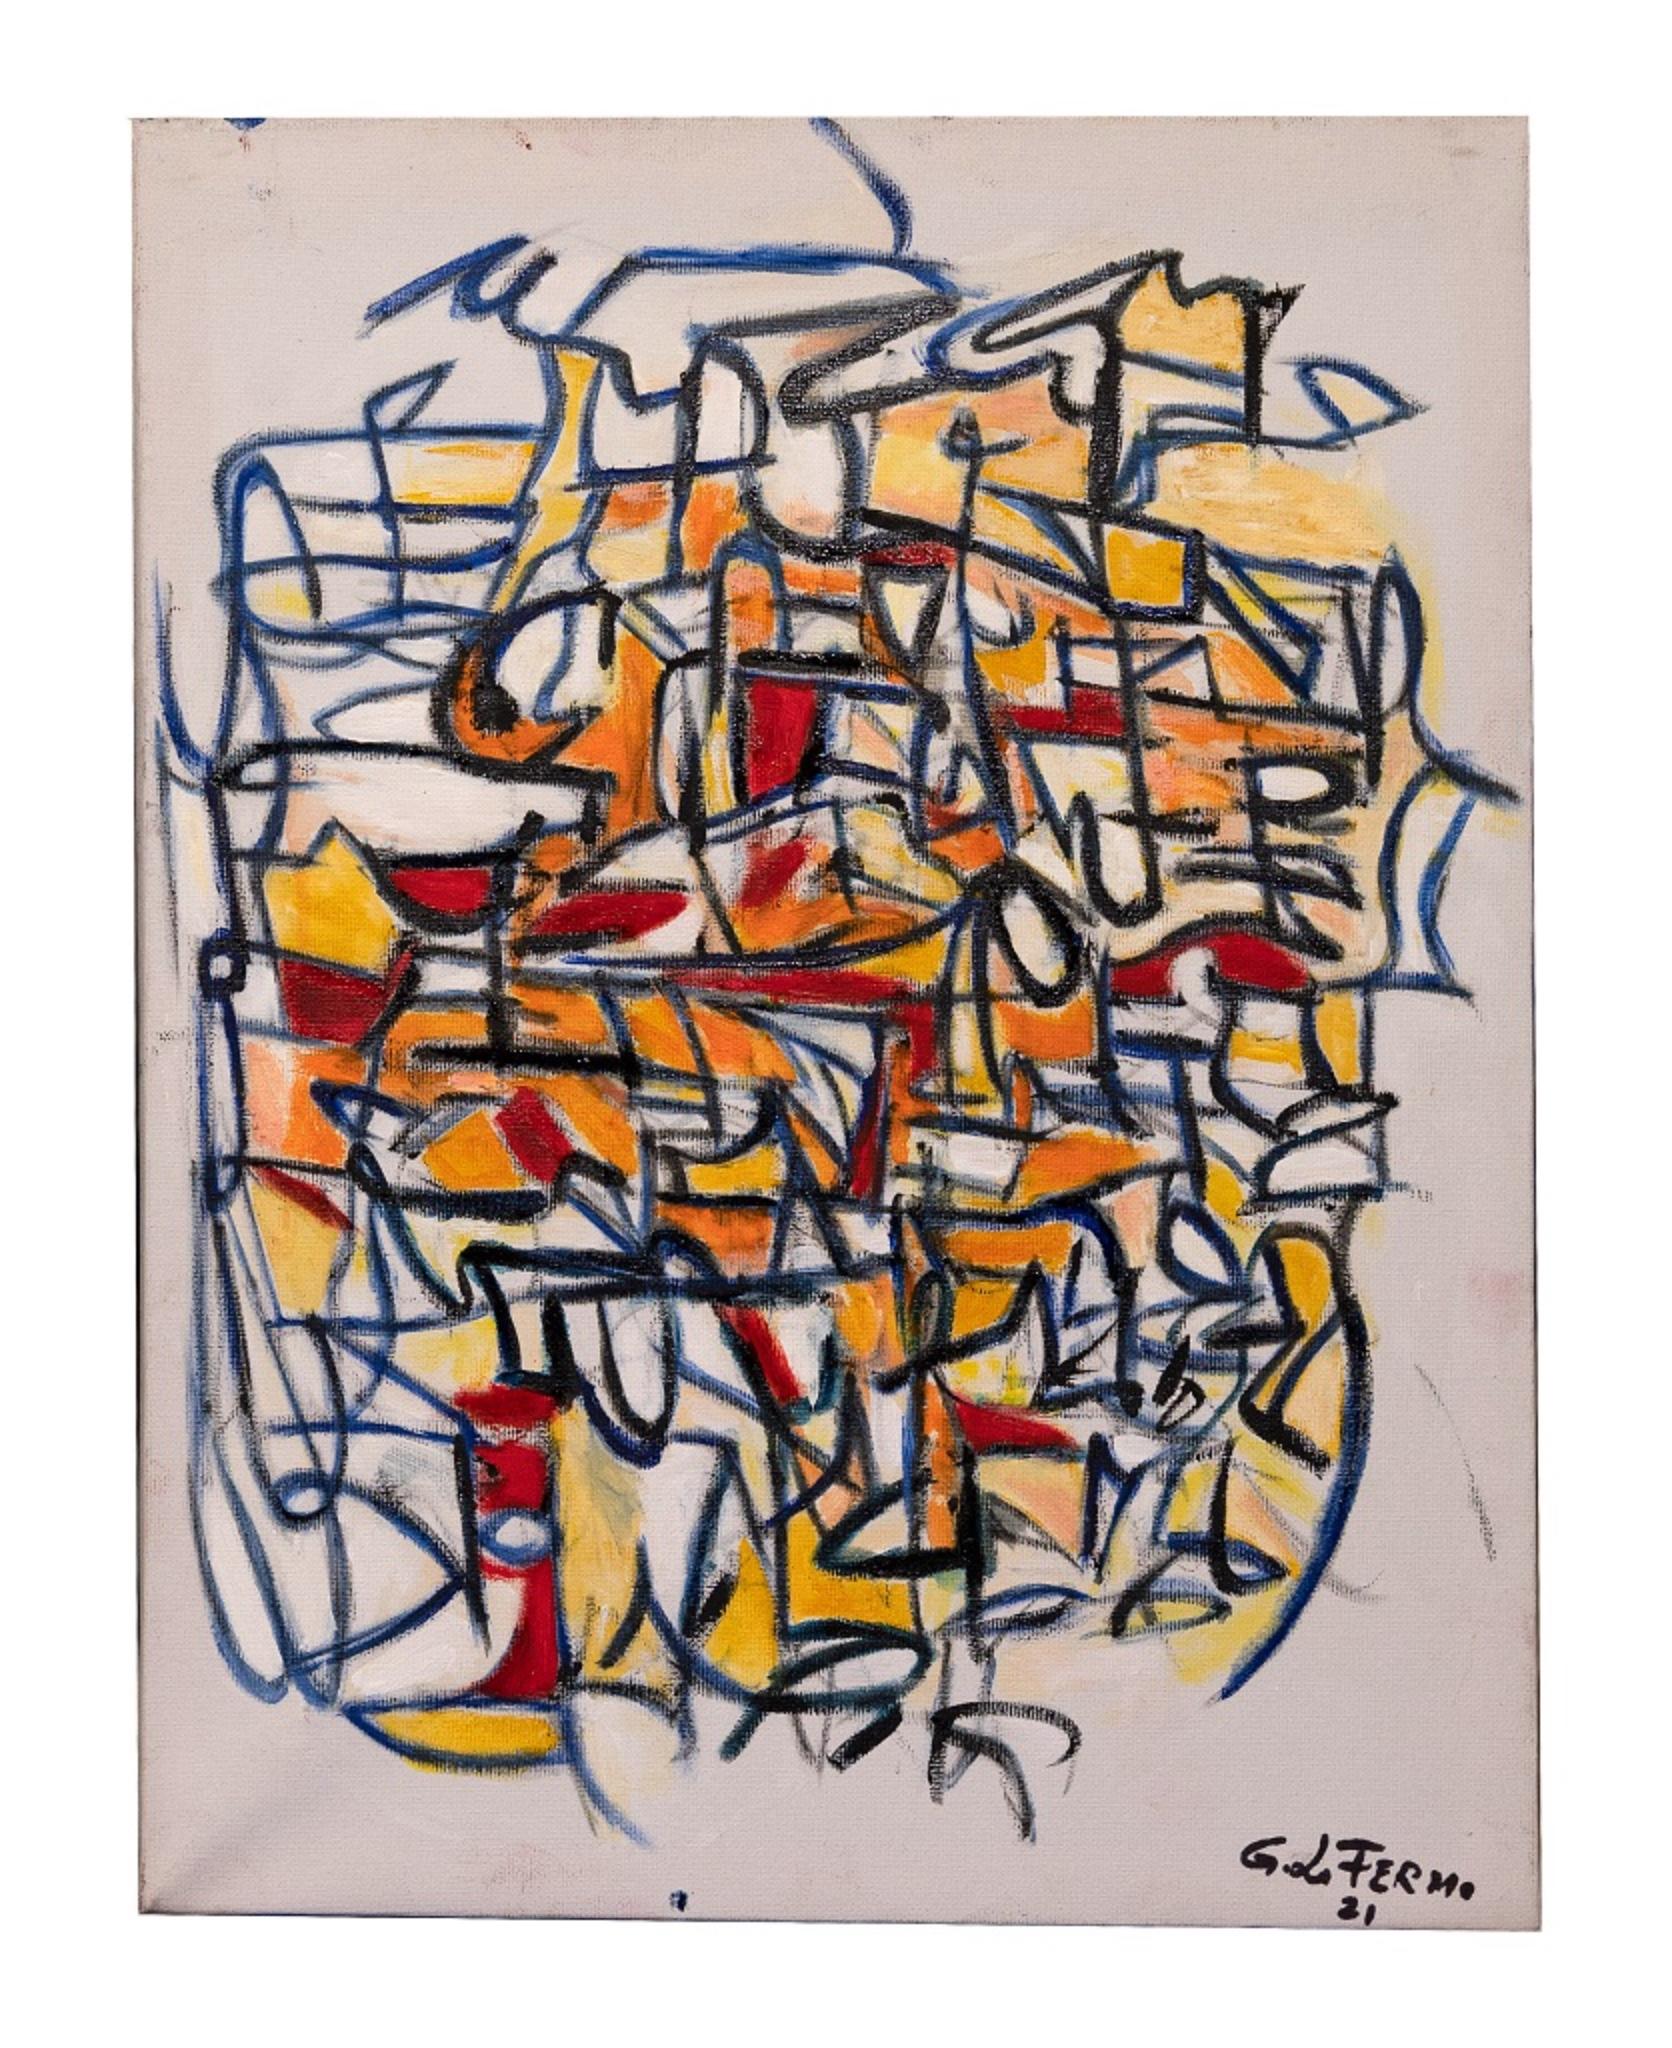 Expression abstraite - Peinture à l'huile de Giorgio Lo Fermo - 2021